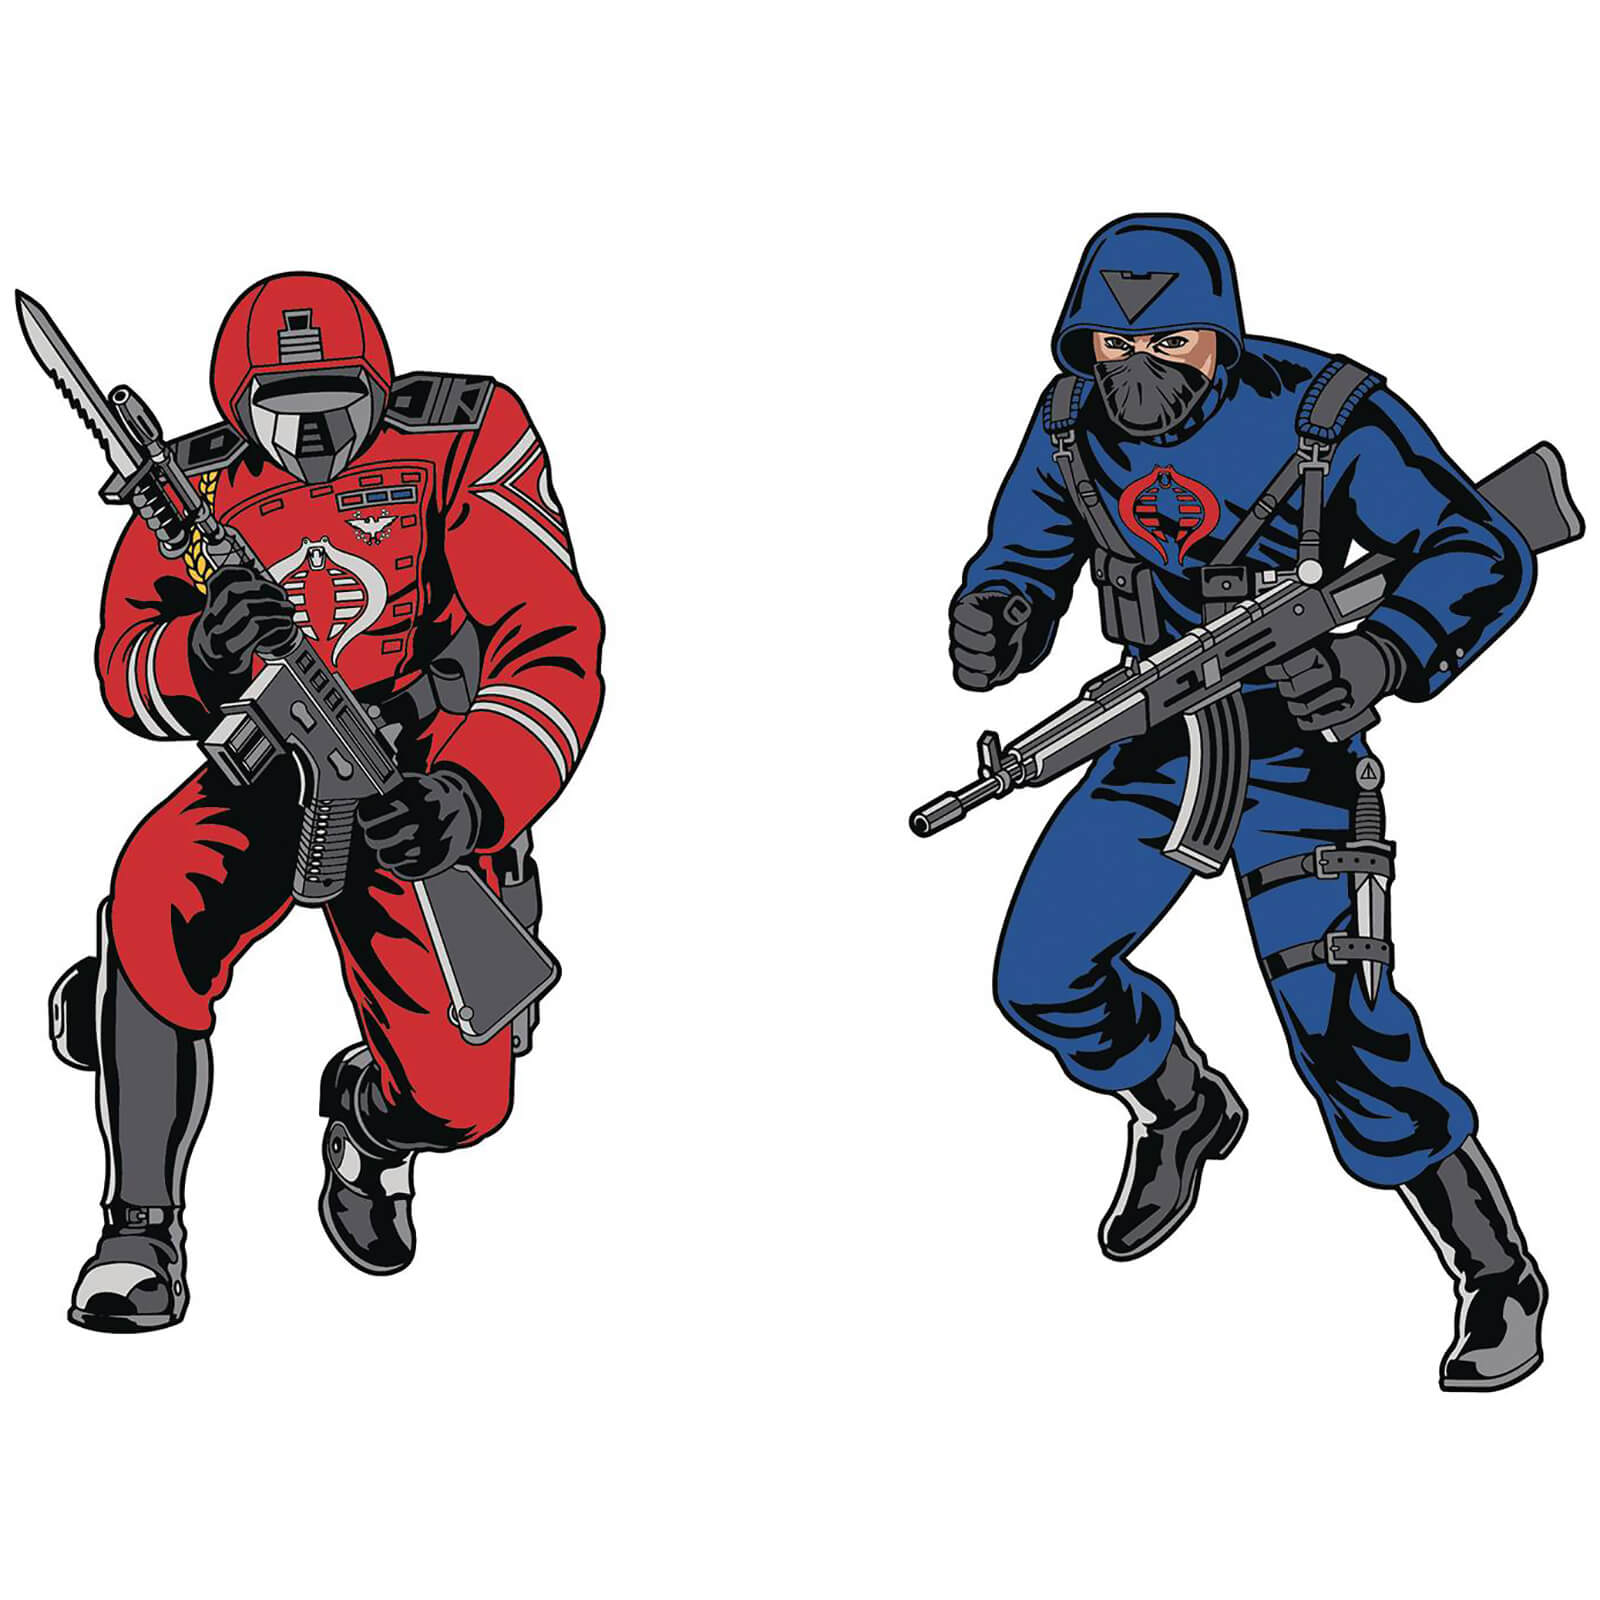 Image of G.I. Joe Retro Pin Set 2-pack - Cobra Elite Officer (Crimson Guard) & Cobra Officer